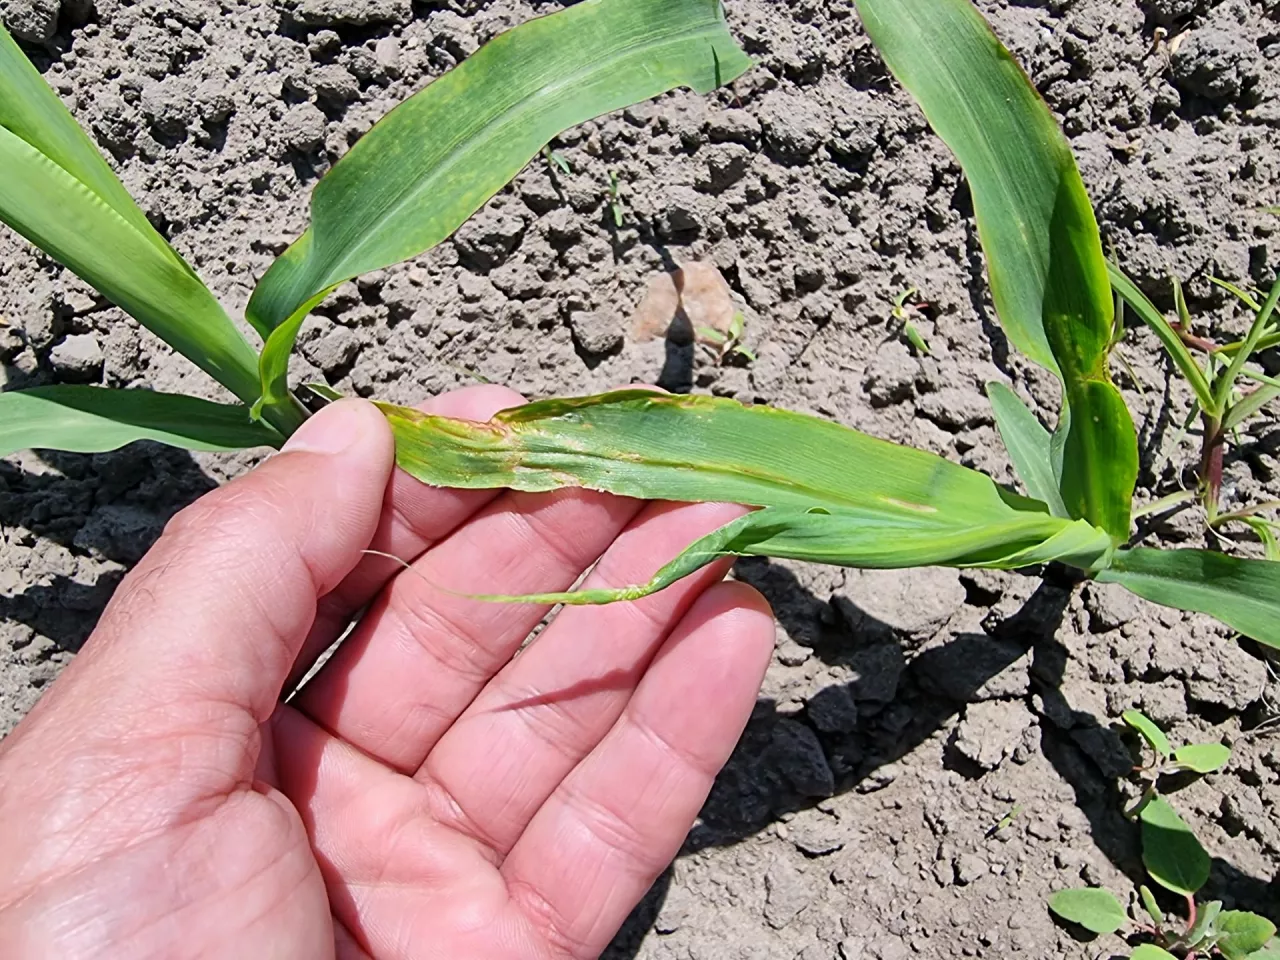 Na zdjęciu widoczne są typowe objaw żerowania ploniarki zbożówki na kukurydzy. Termin masowego wylotu muchówek i składania jaj przypada najczęściej w okresie wschodów kukurydzy, gdy rośliny mają 1–2 liści.